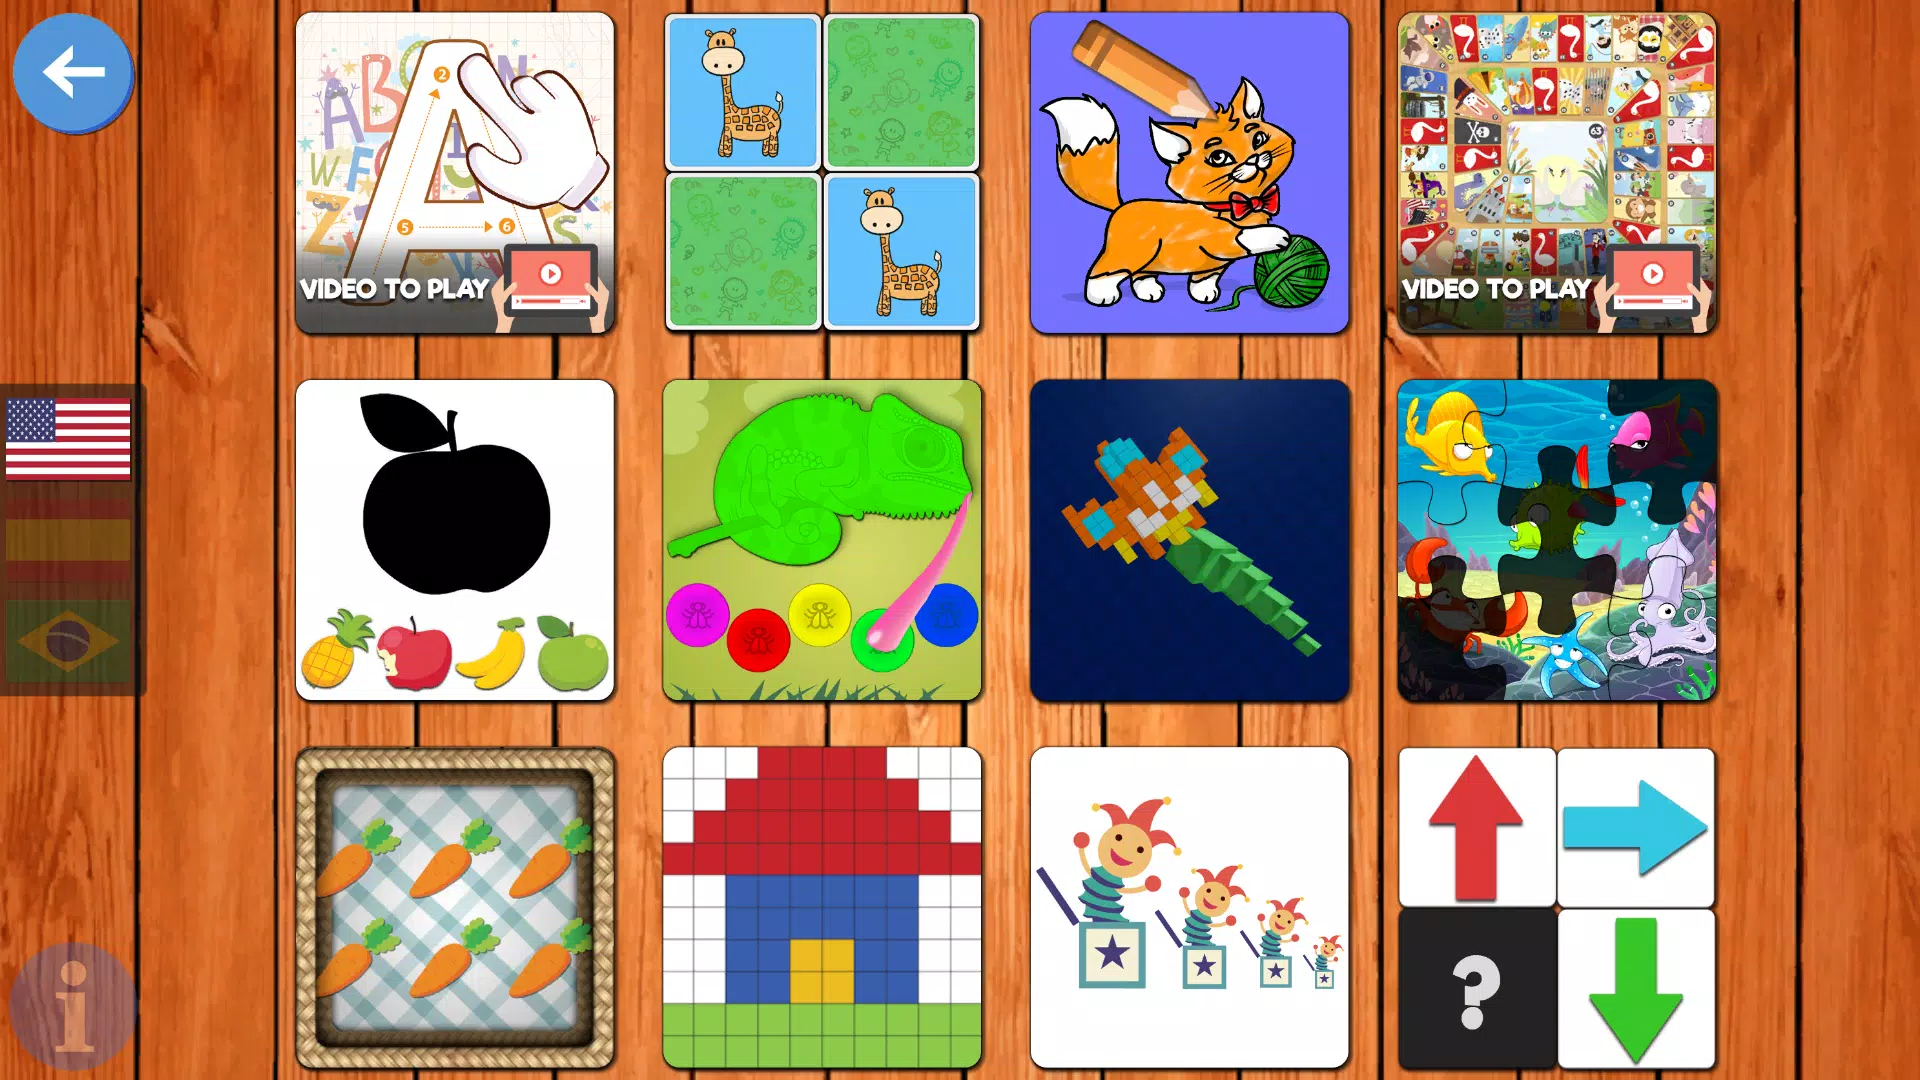 Download do APK de Jogos Educativos Crianças 5 para Android